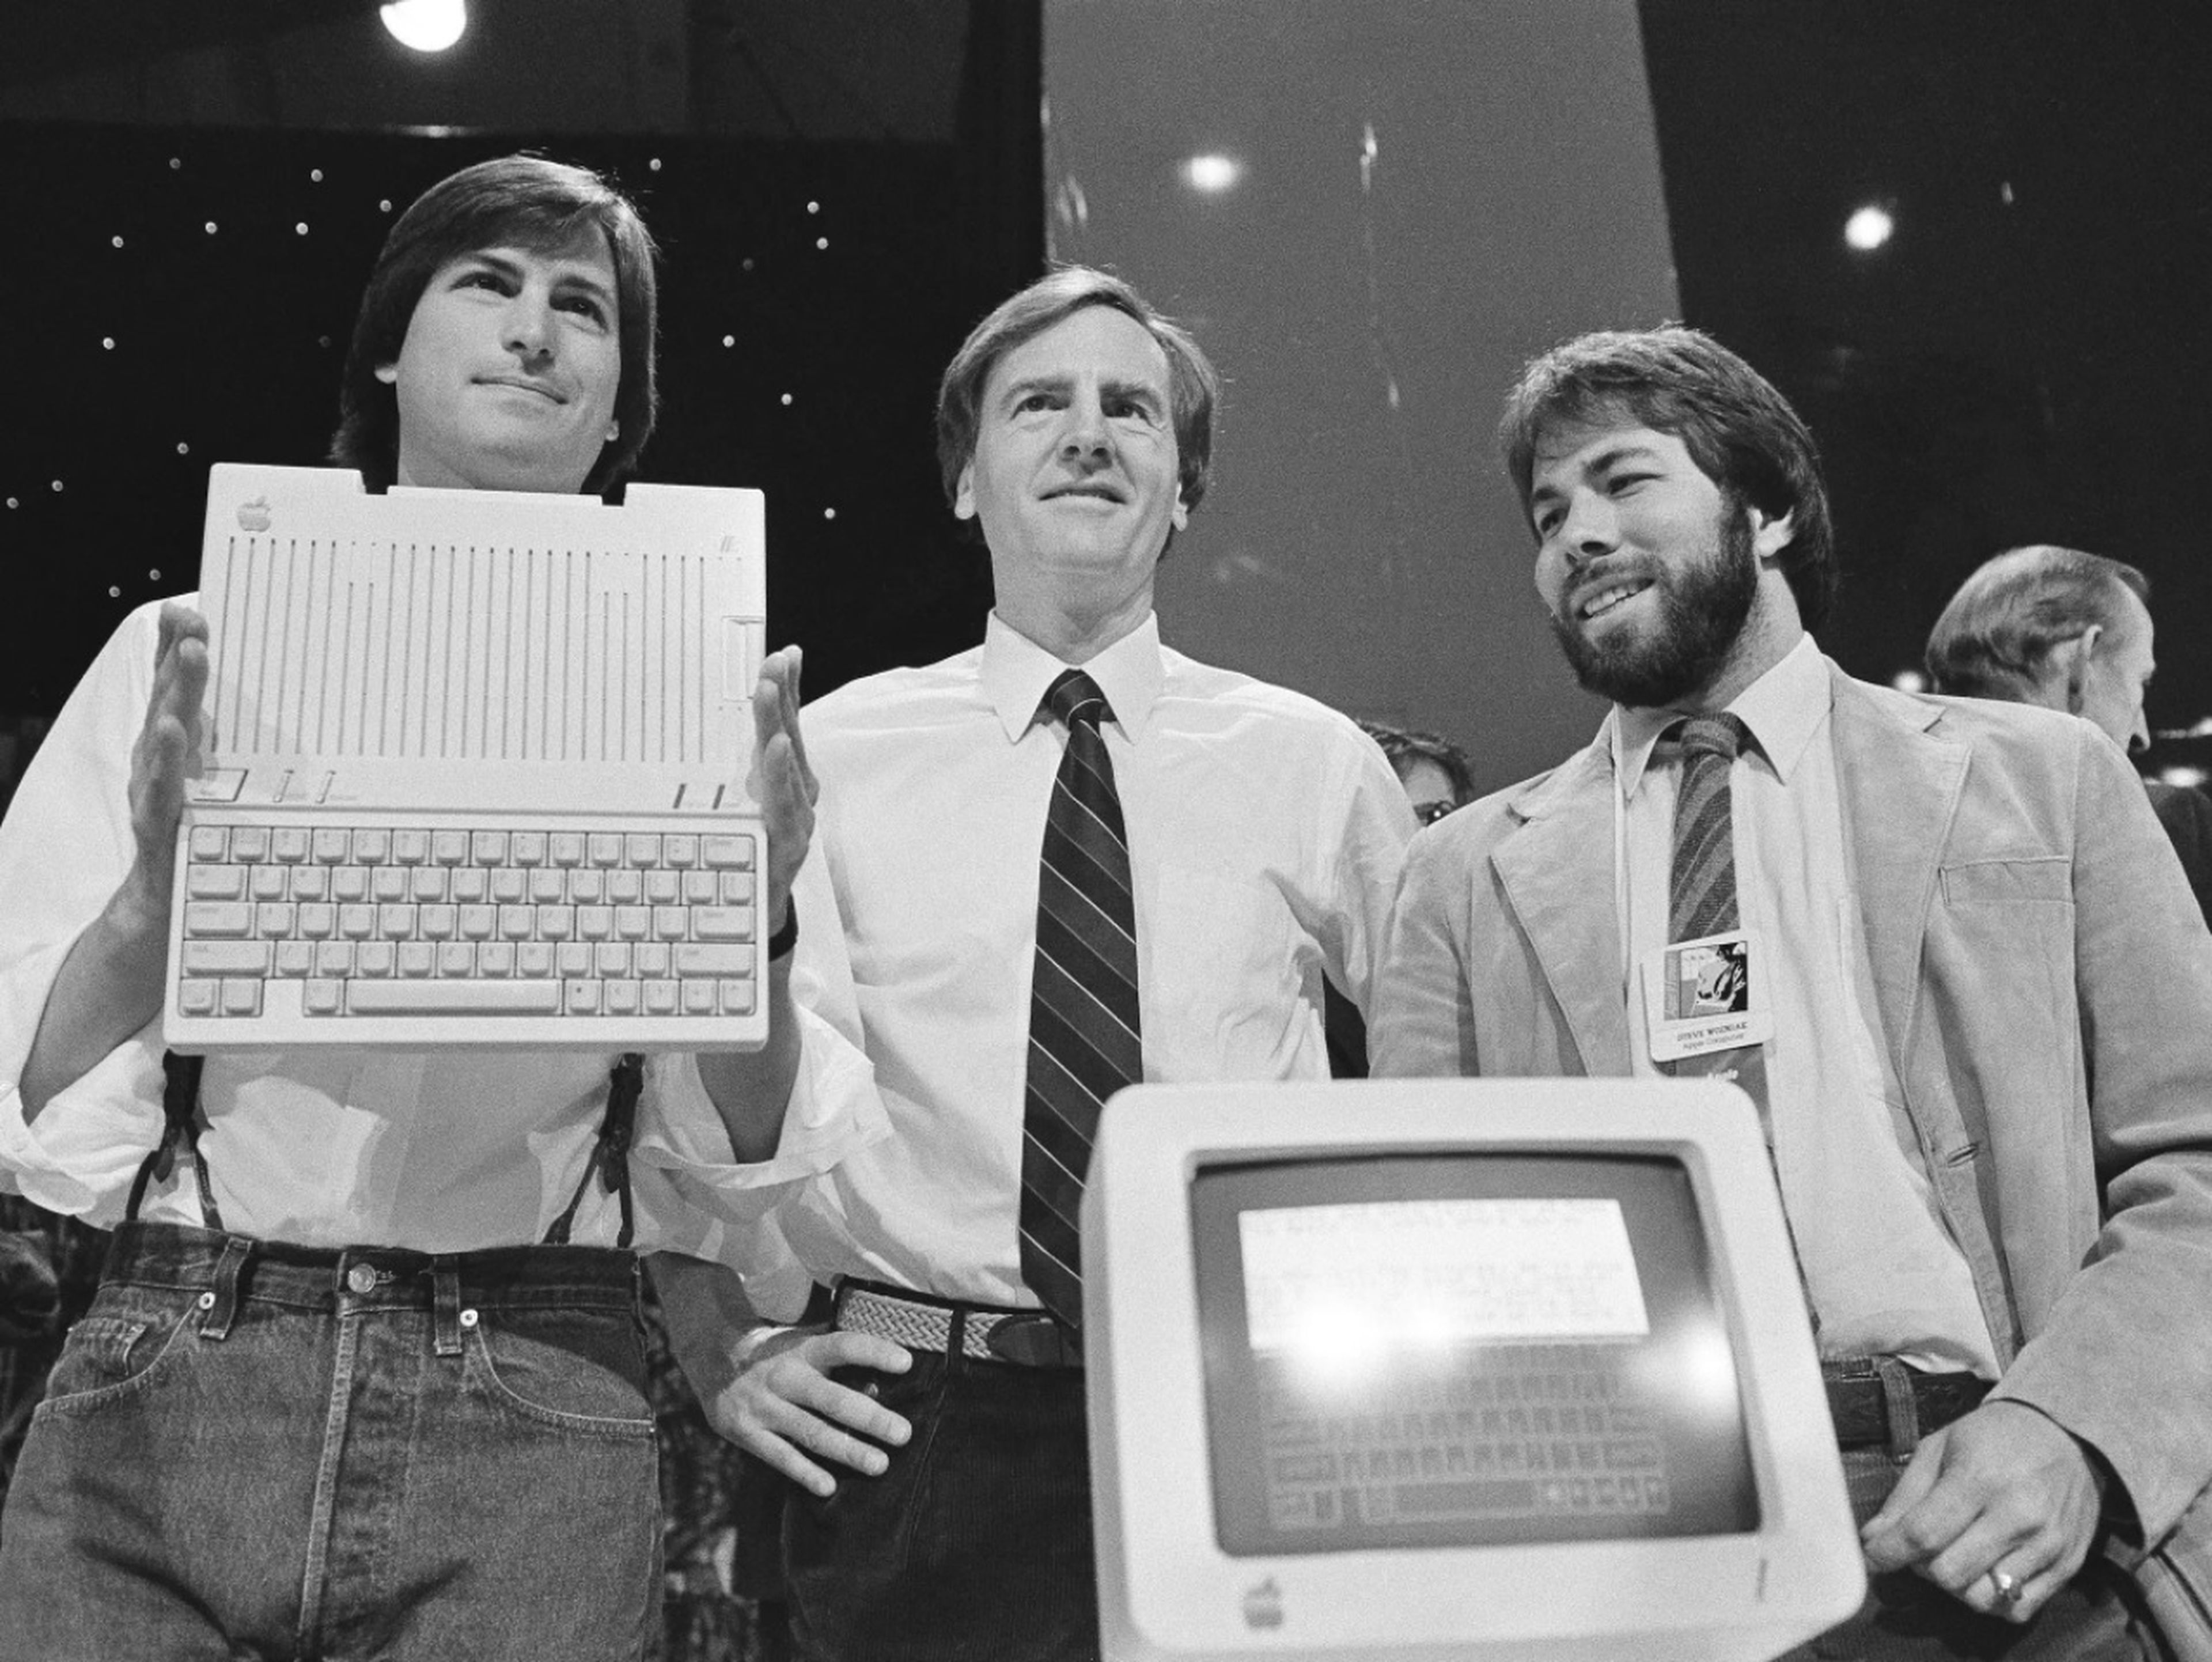 Steve Jobs ya hizo referencia a la tecno-utopía libertaria afirmando que el ordenador personal liberaría a la gente.